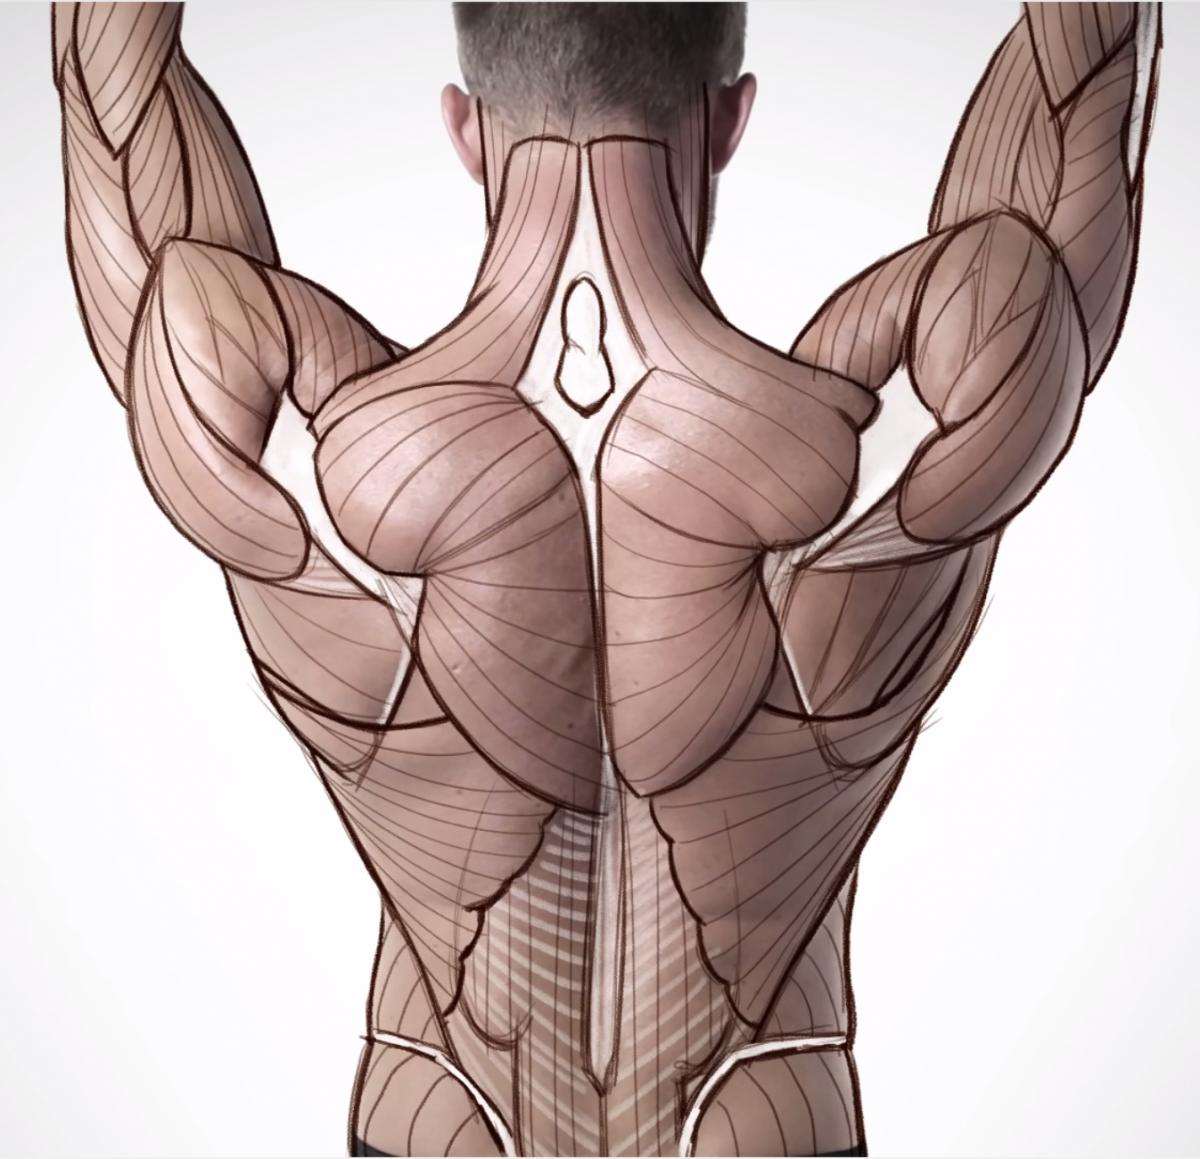 Дельтовидная мышца спины анатомия